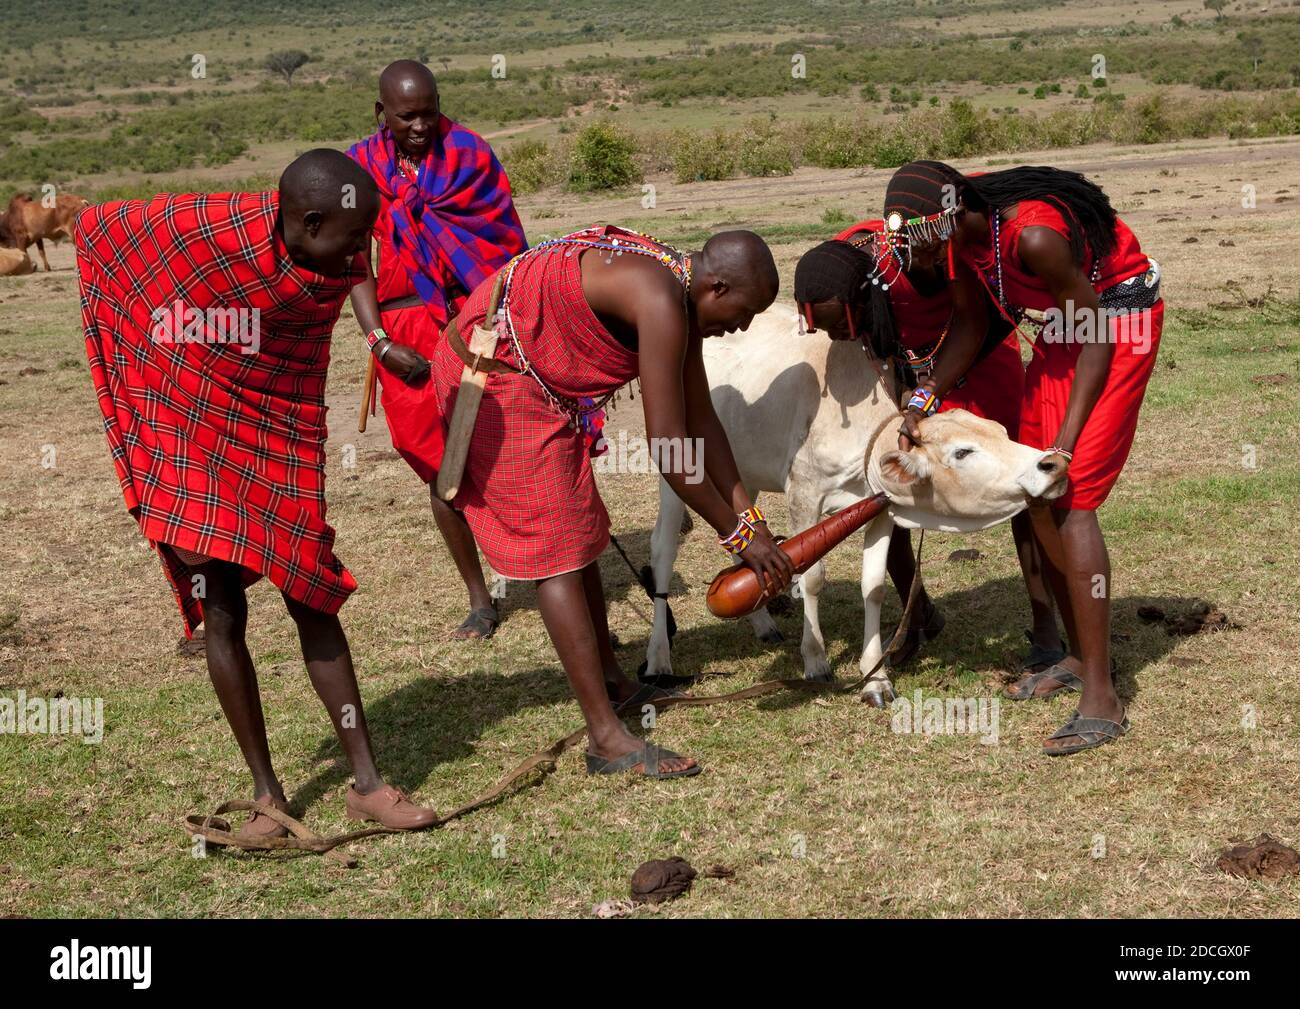 Maasai men collecting blood from a cow, Rift Valley Province, Maasai Mara, Kenya Stock Photo